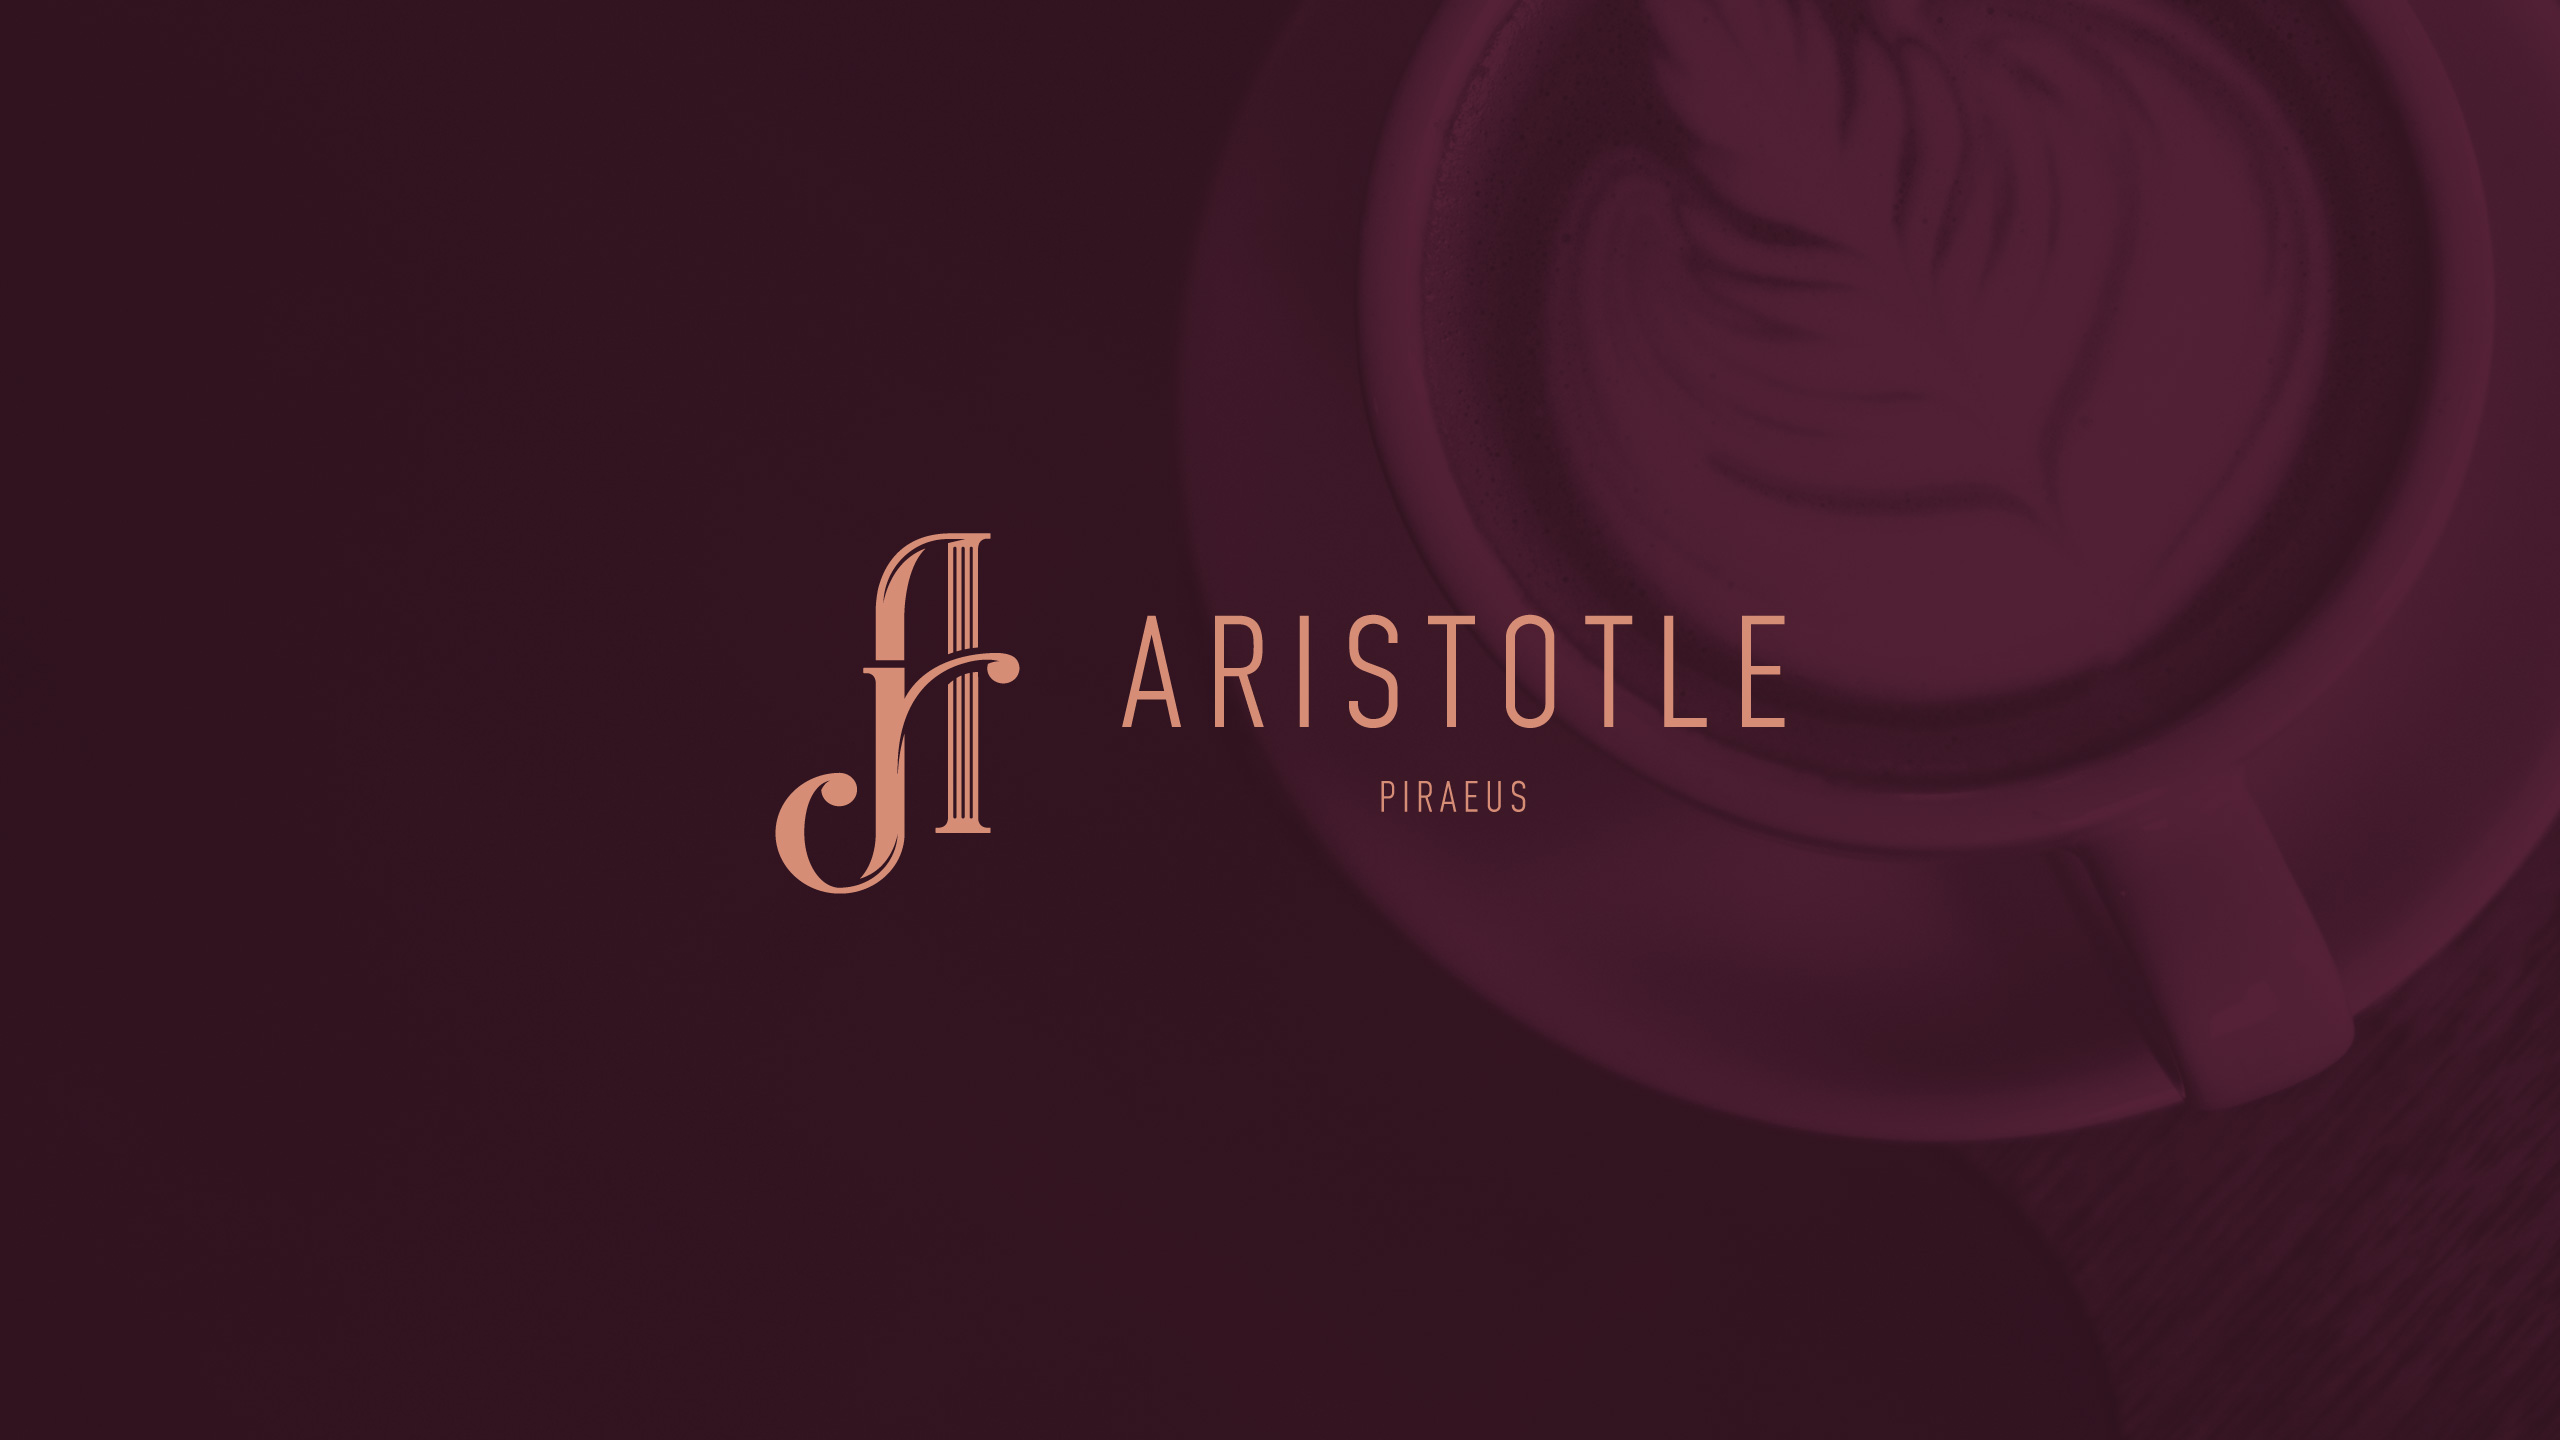 Aristotle Piraeus